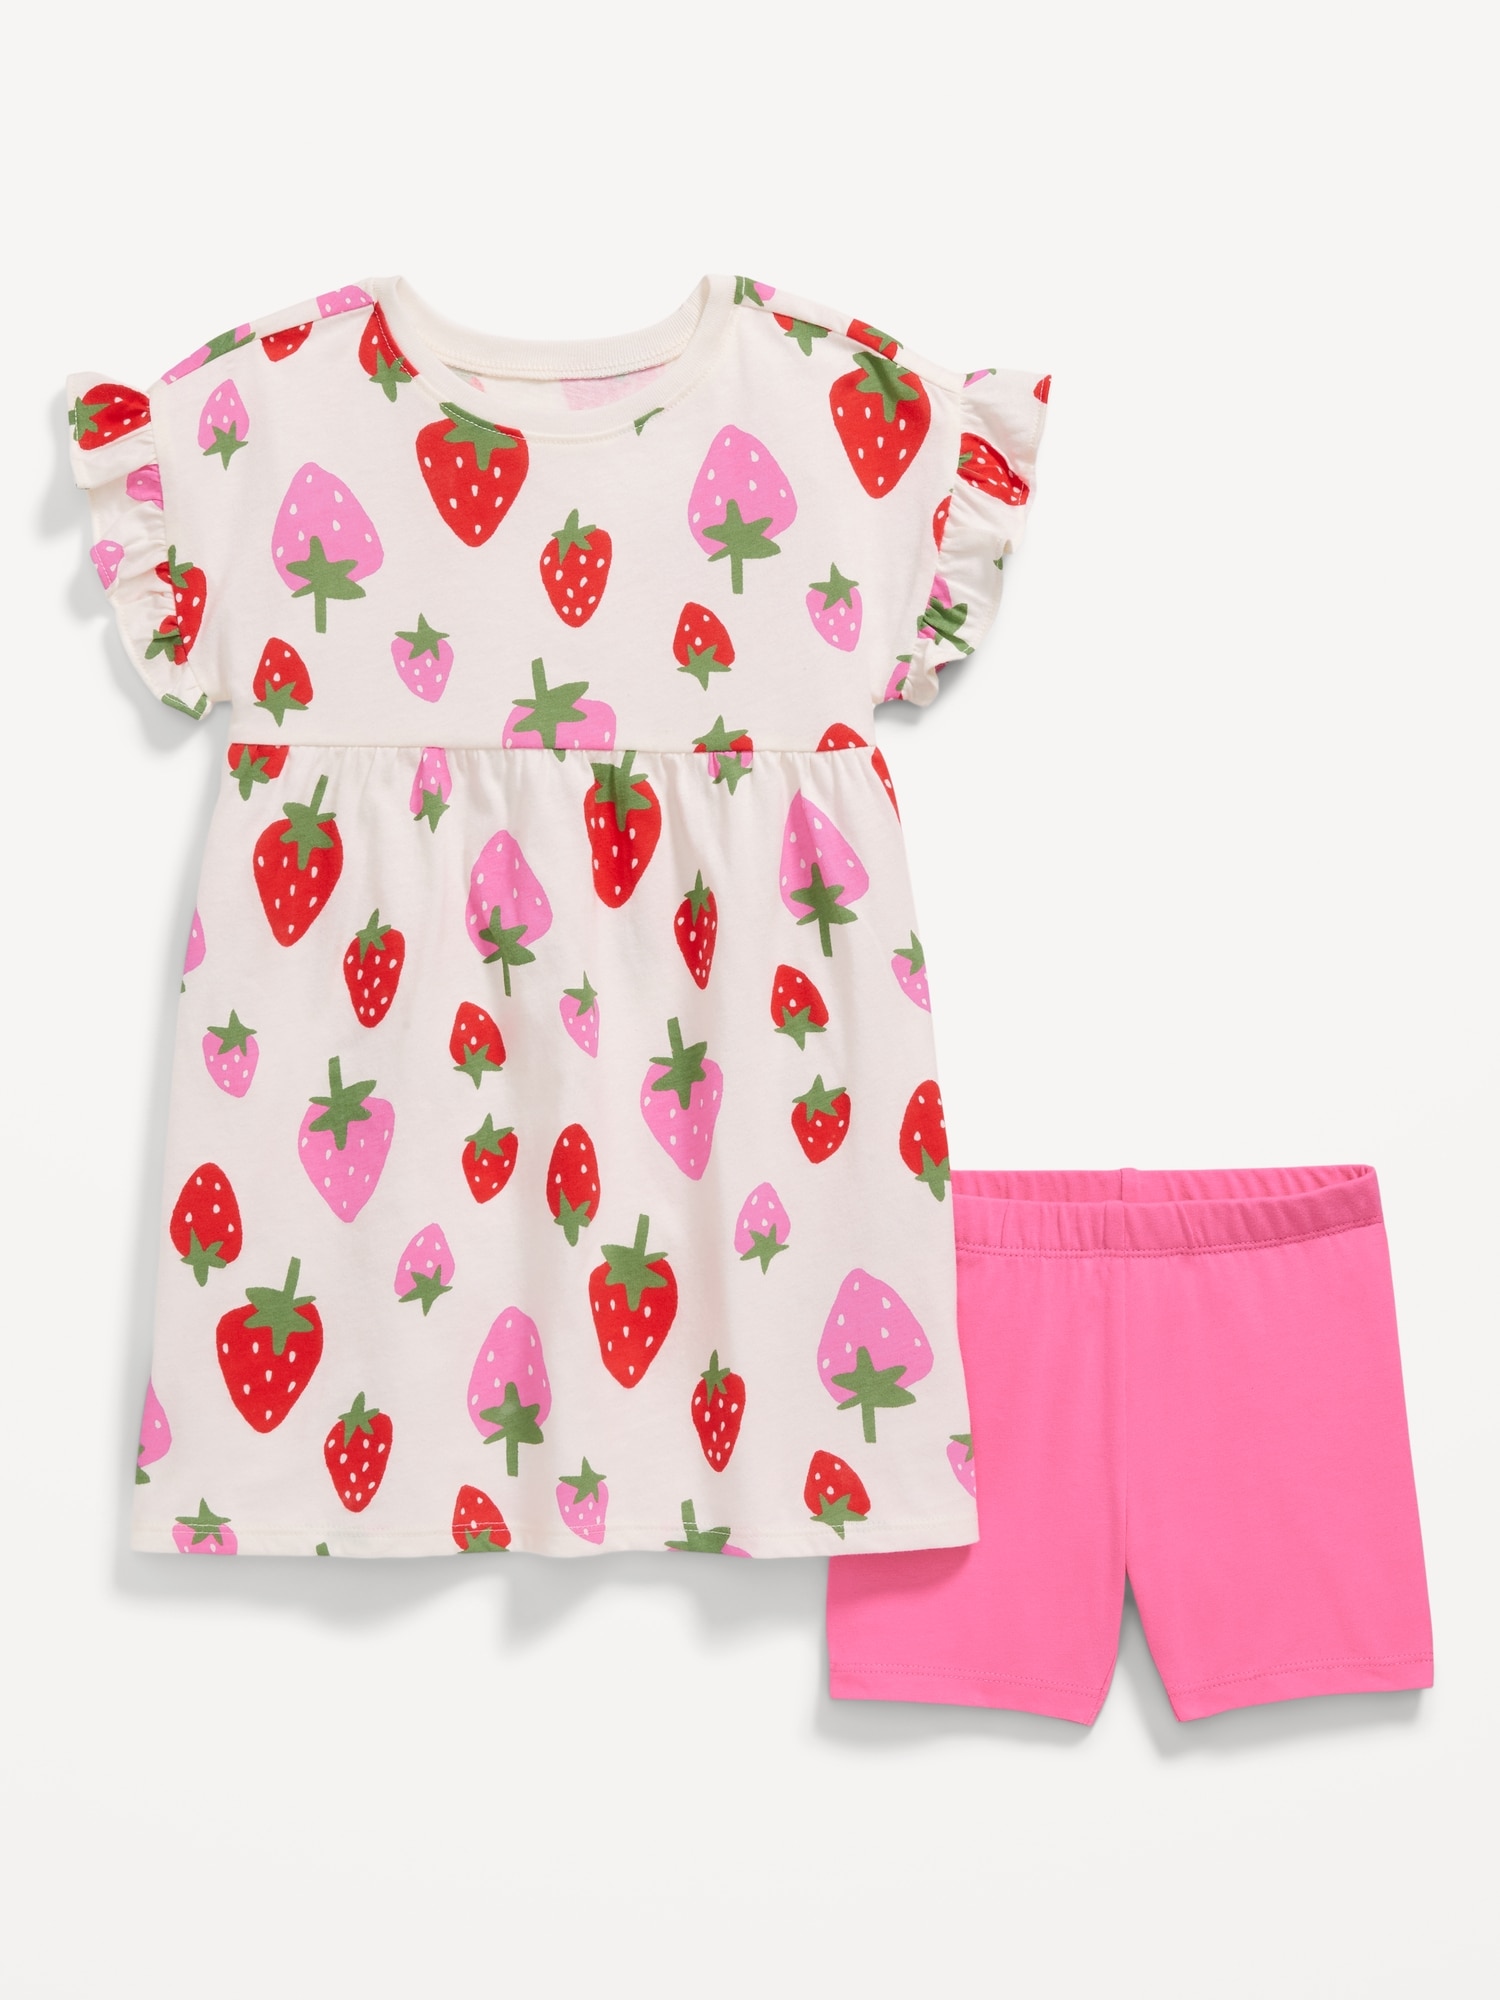 Printed Flutter-Sleeve Dress and Biker Shorts Set for Toddler Girls Hot Deal